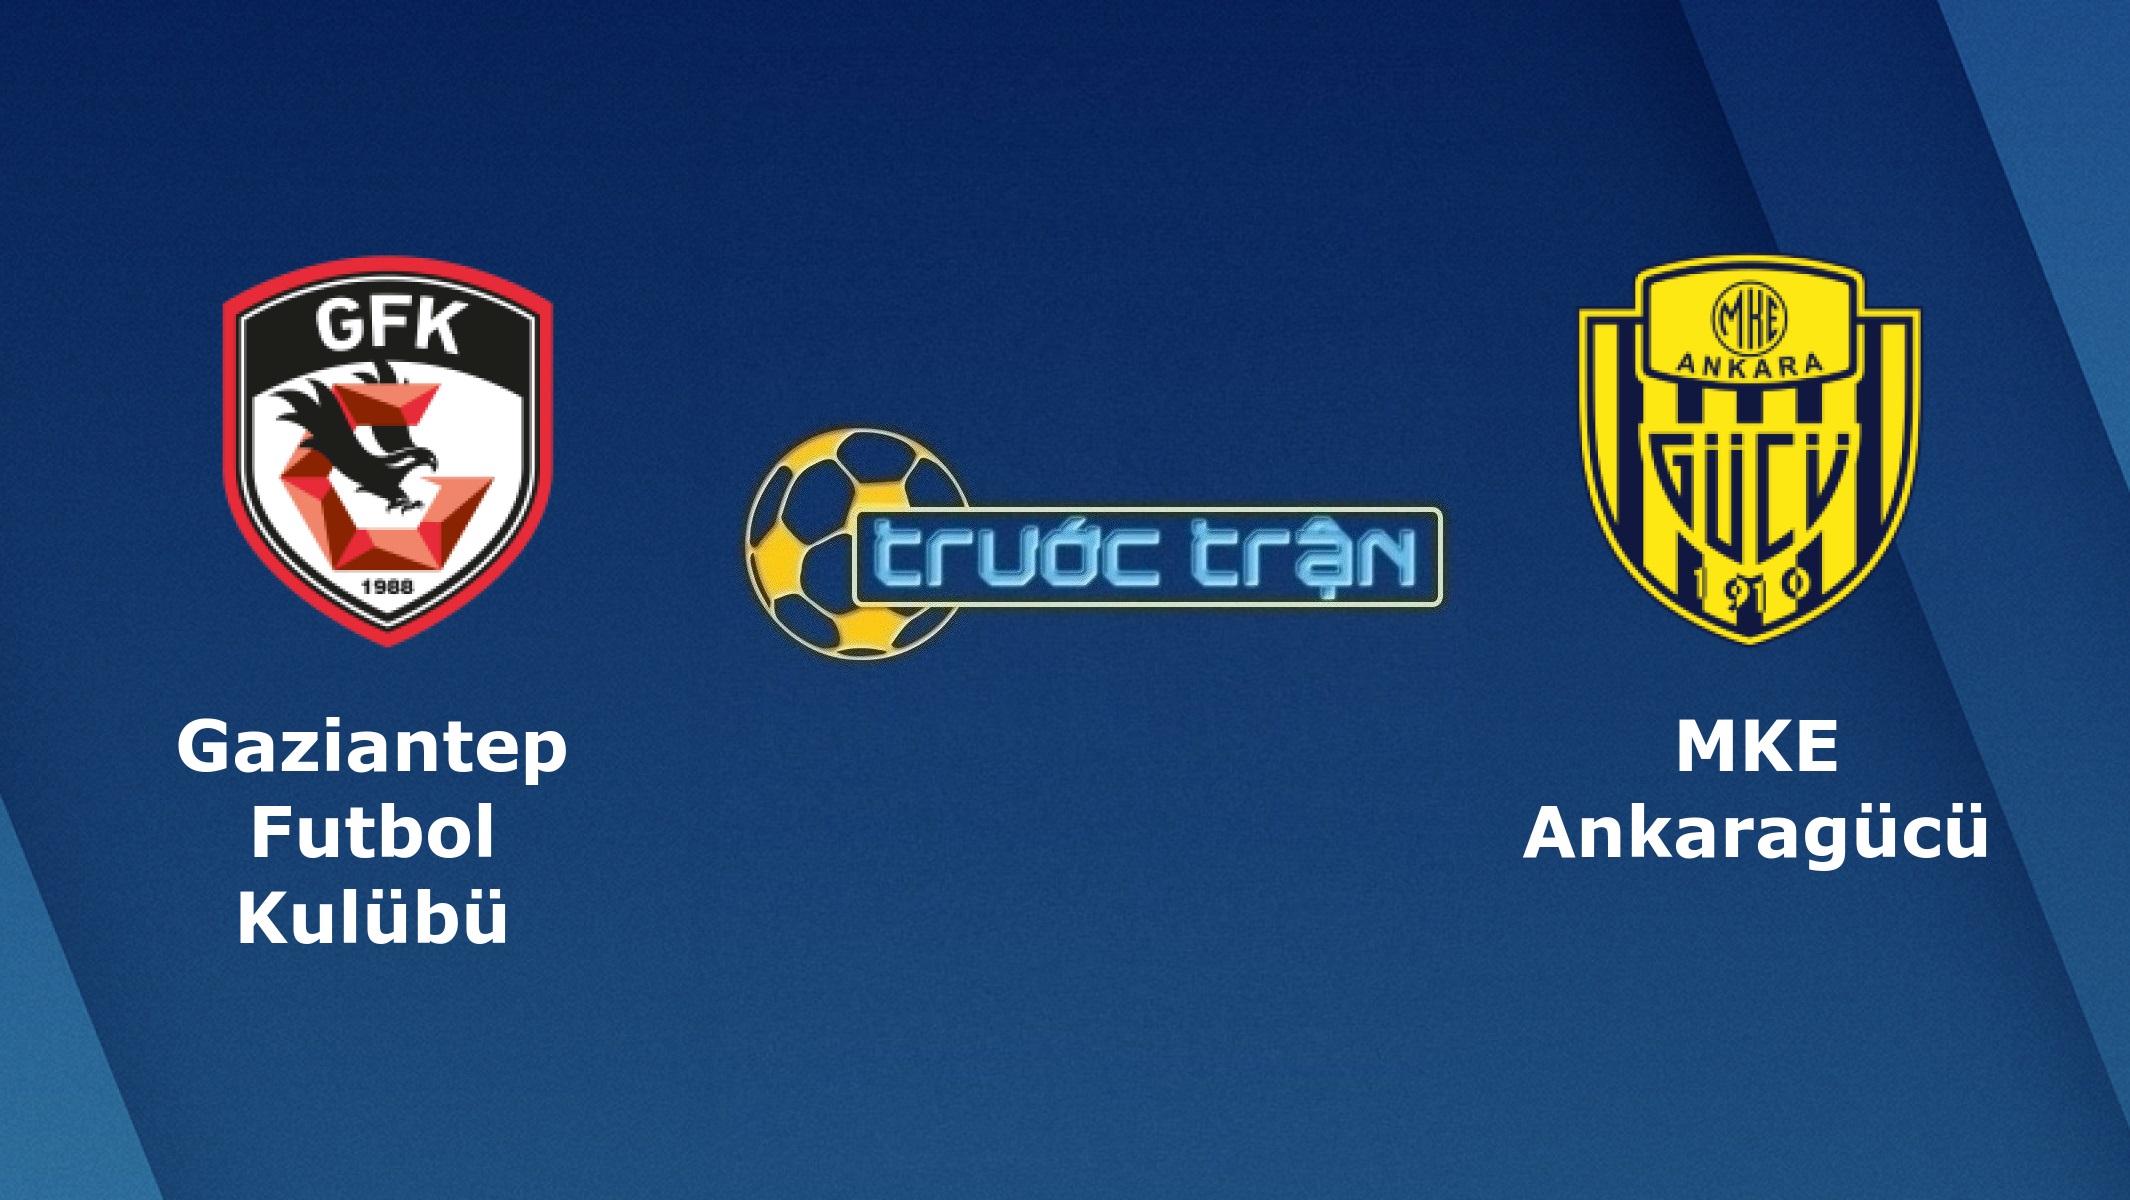 Gaziantep vs Ankaragucu – Tip kèo bóng đá hôm nay – 20h00 05/01/2021